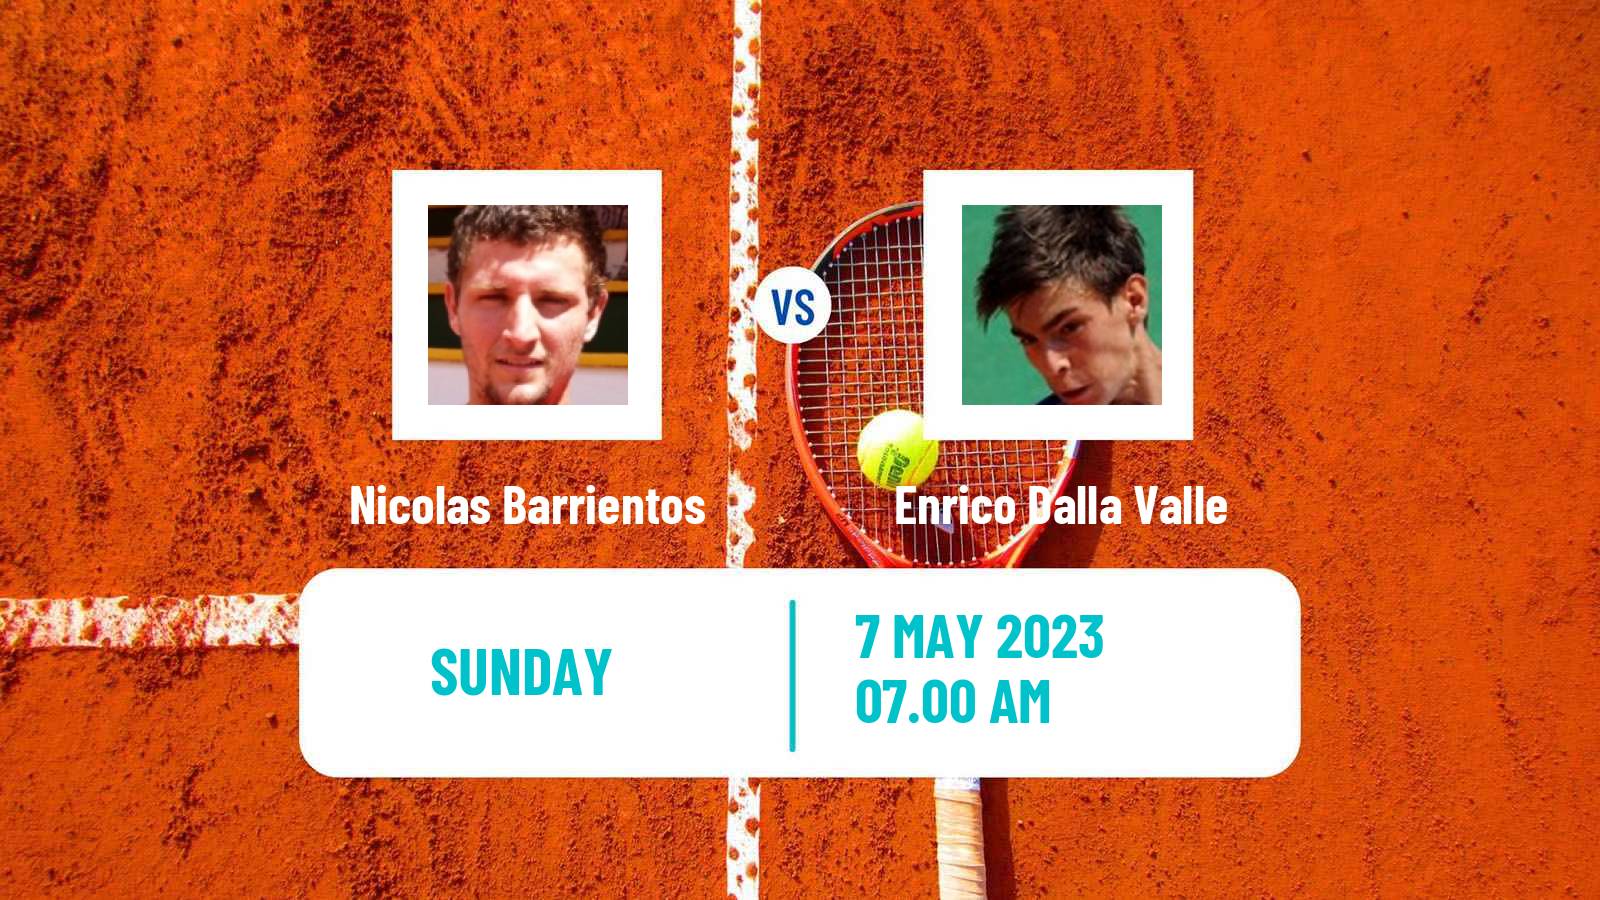 Tennis ATP Challenger Nicolas Barrientos - Enrico Dalla Valle